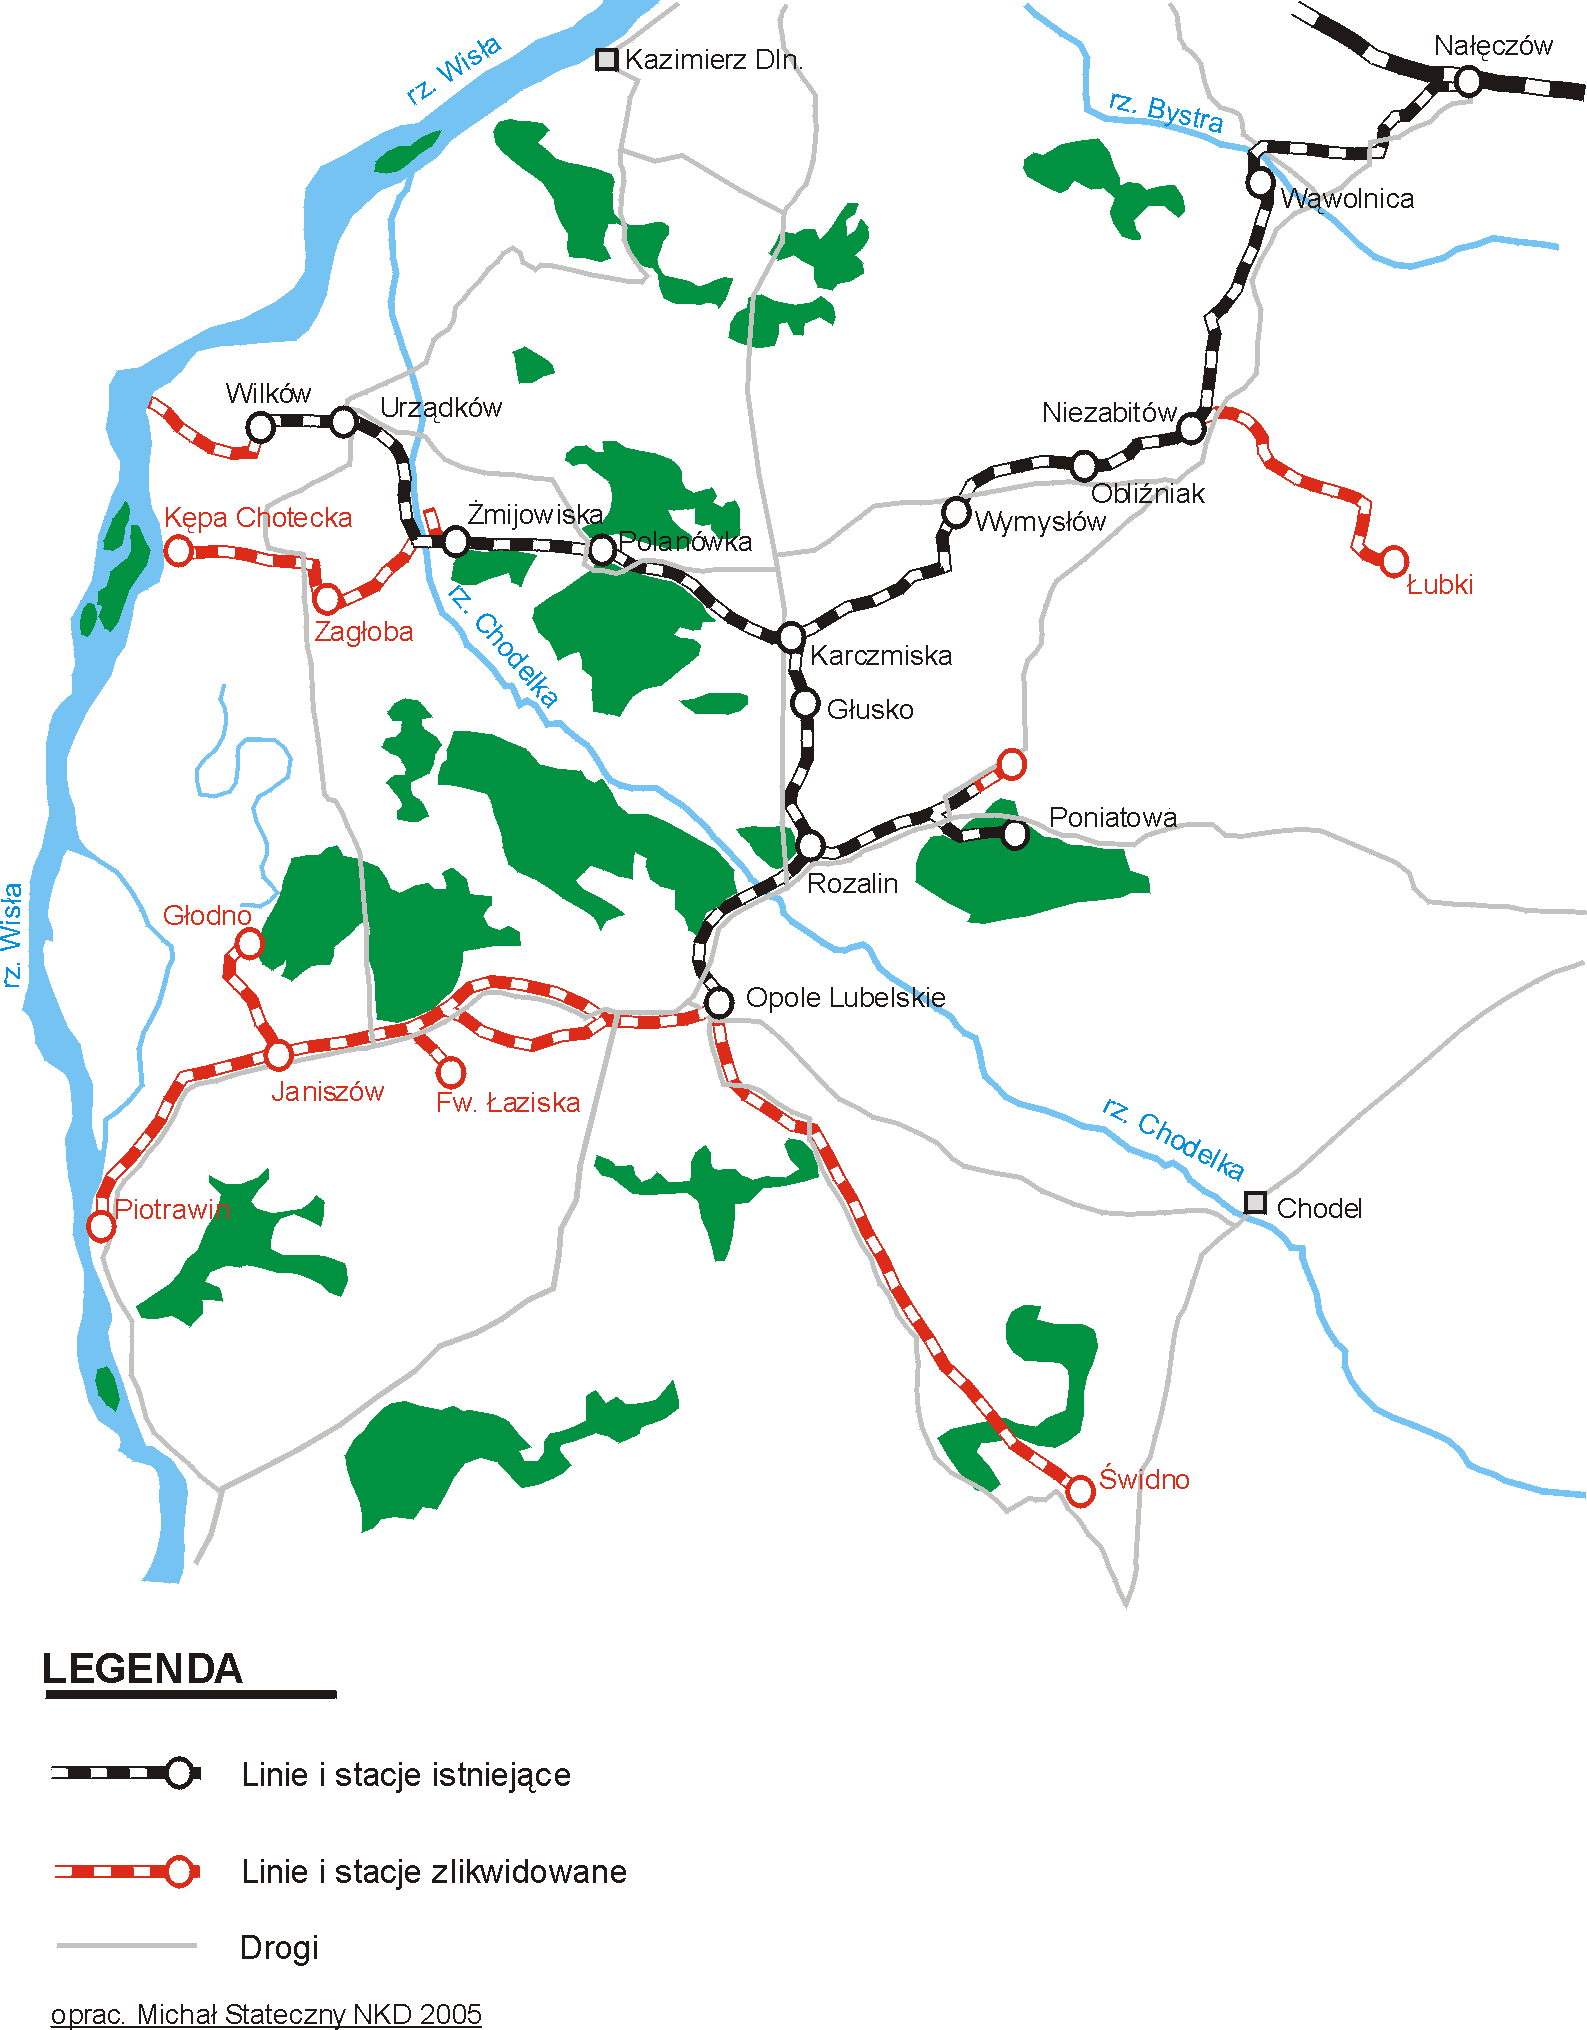 Map opracowa: Micha Stateczny 